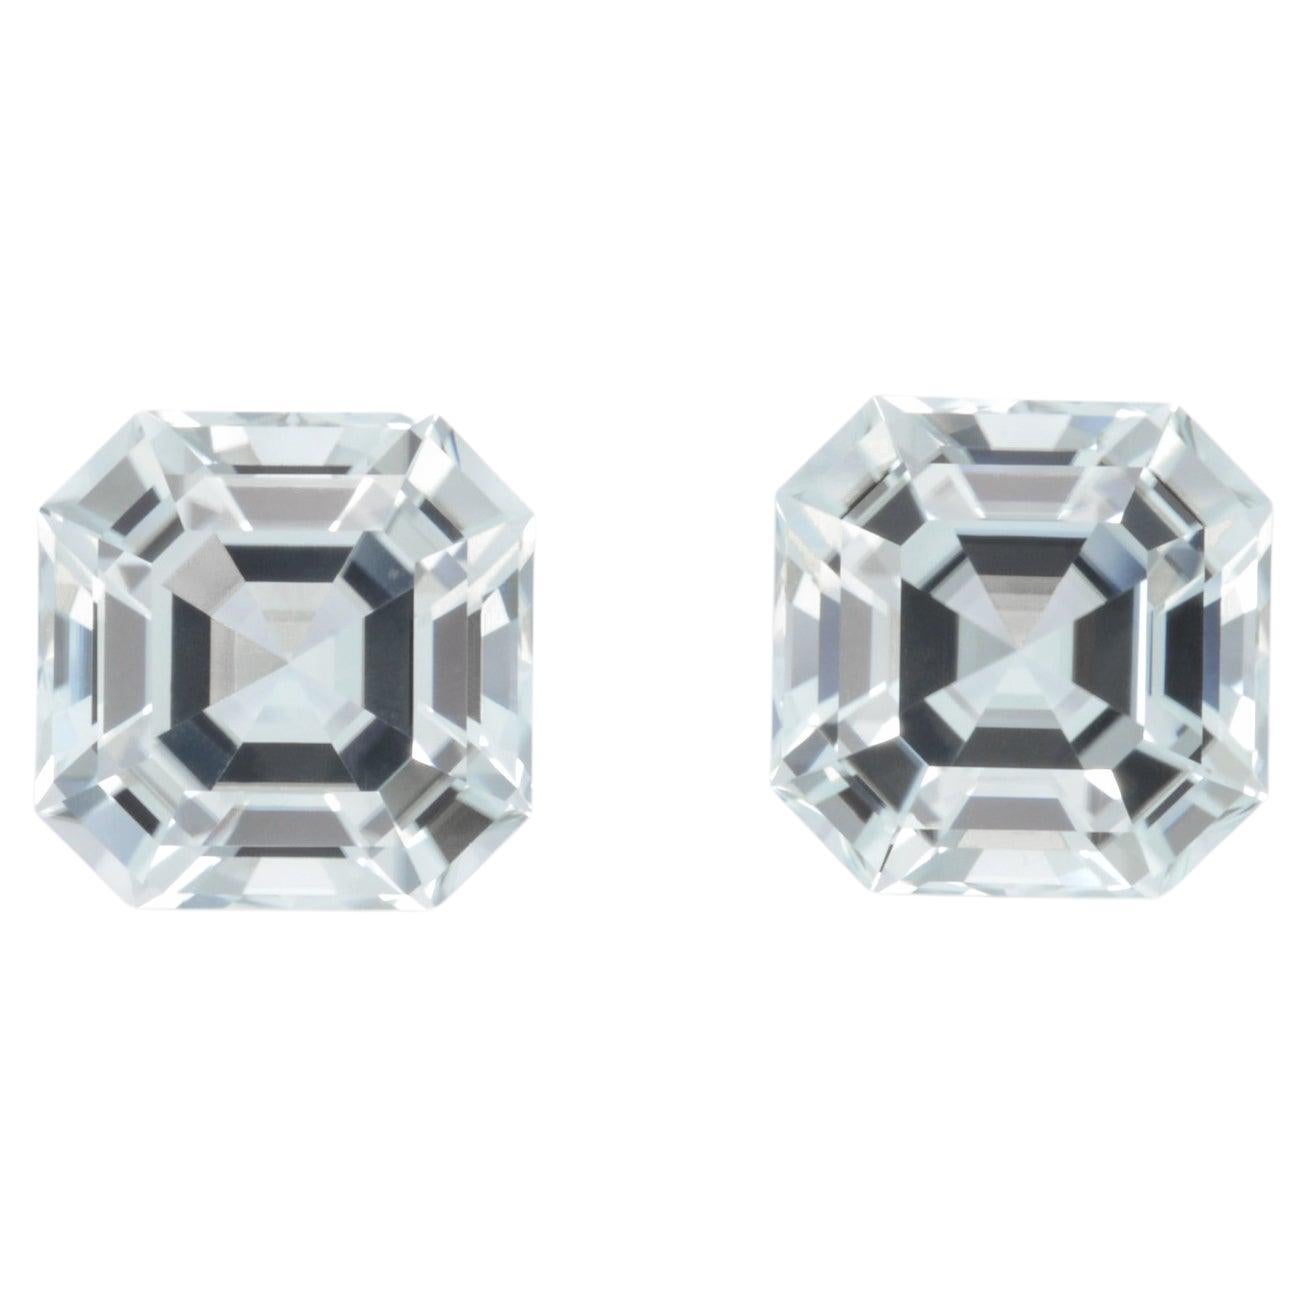 Contemporary Tourmaline Earrings Gemstone Pair 11.26 Carat Unset Asscher Cut Loose Gems For Sale